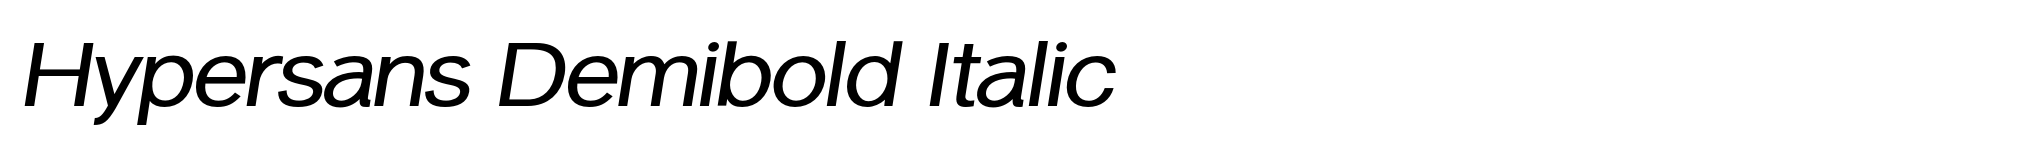 Hypersans Demibold Italic image